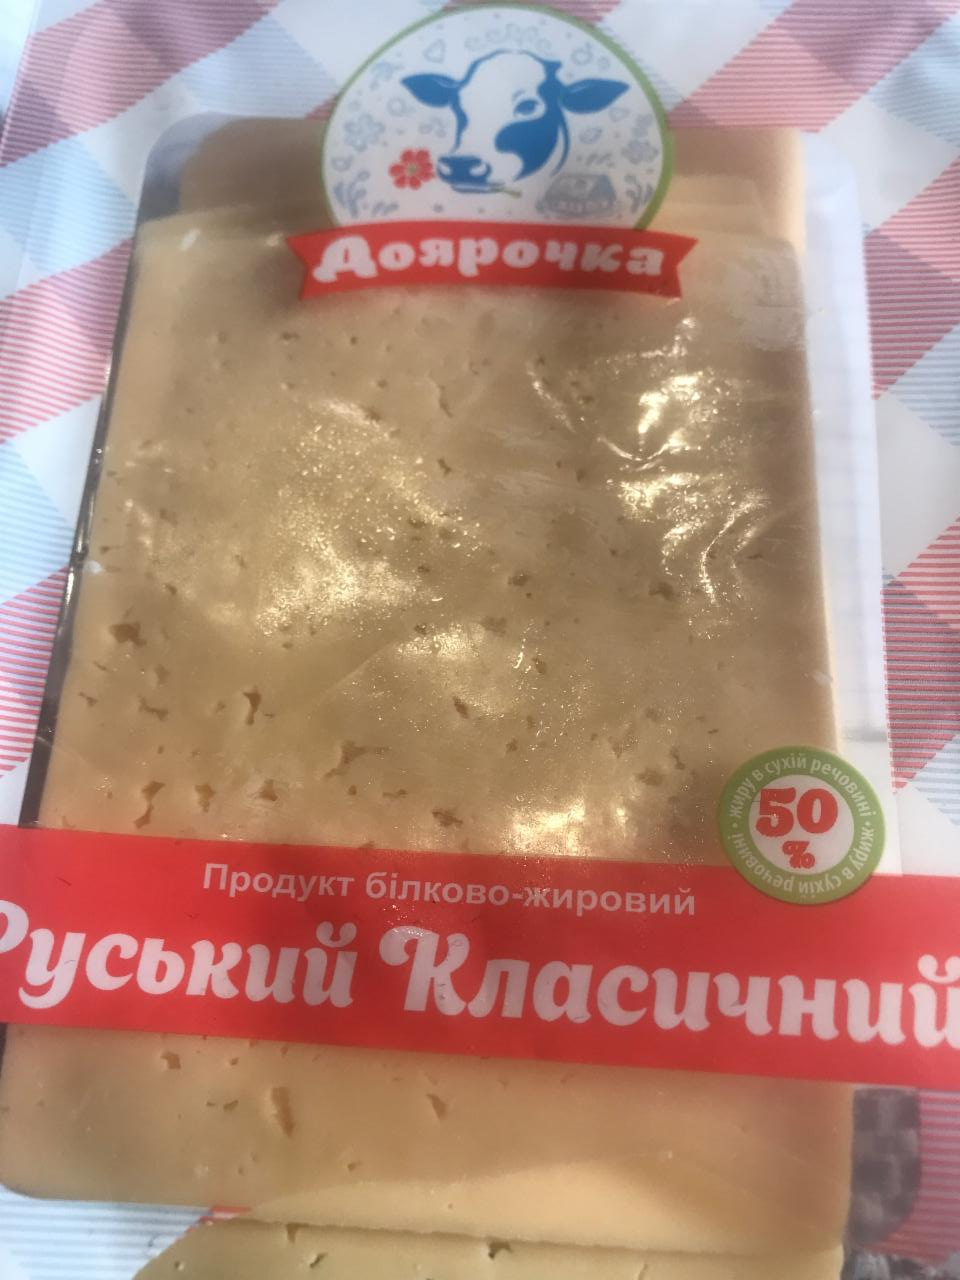 Фото - продукт белково-жировой Русский классический сыр Доярочка